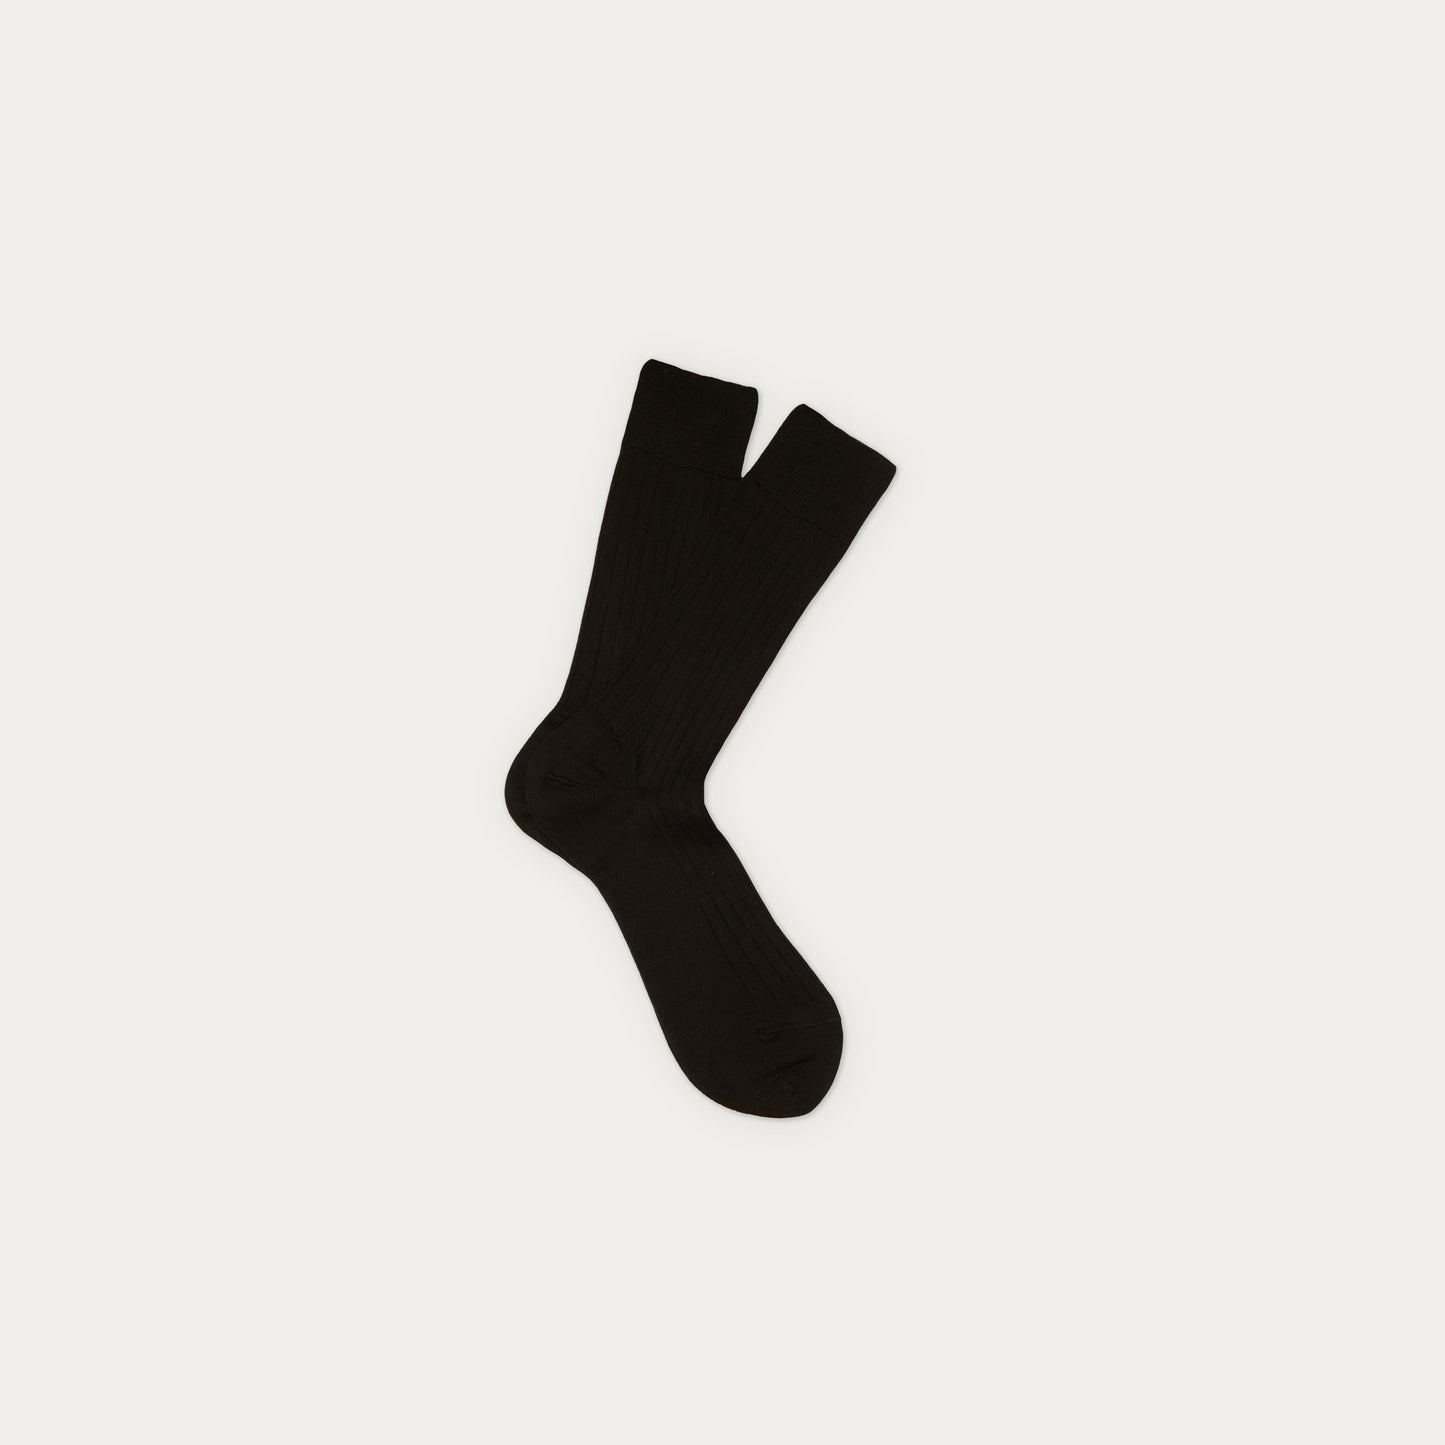 Weekly black socks